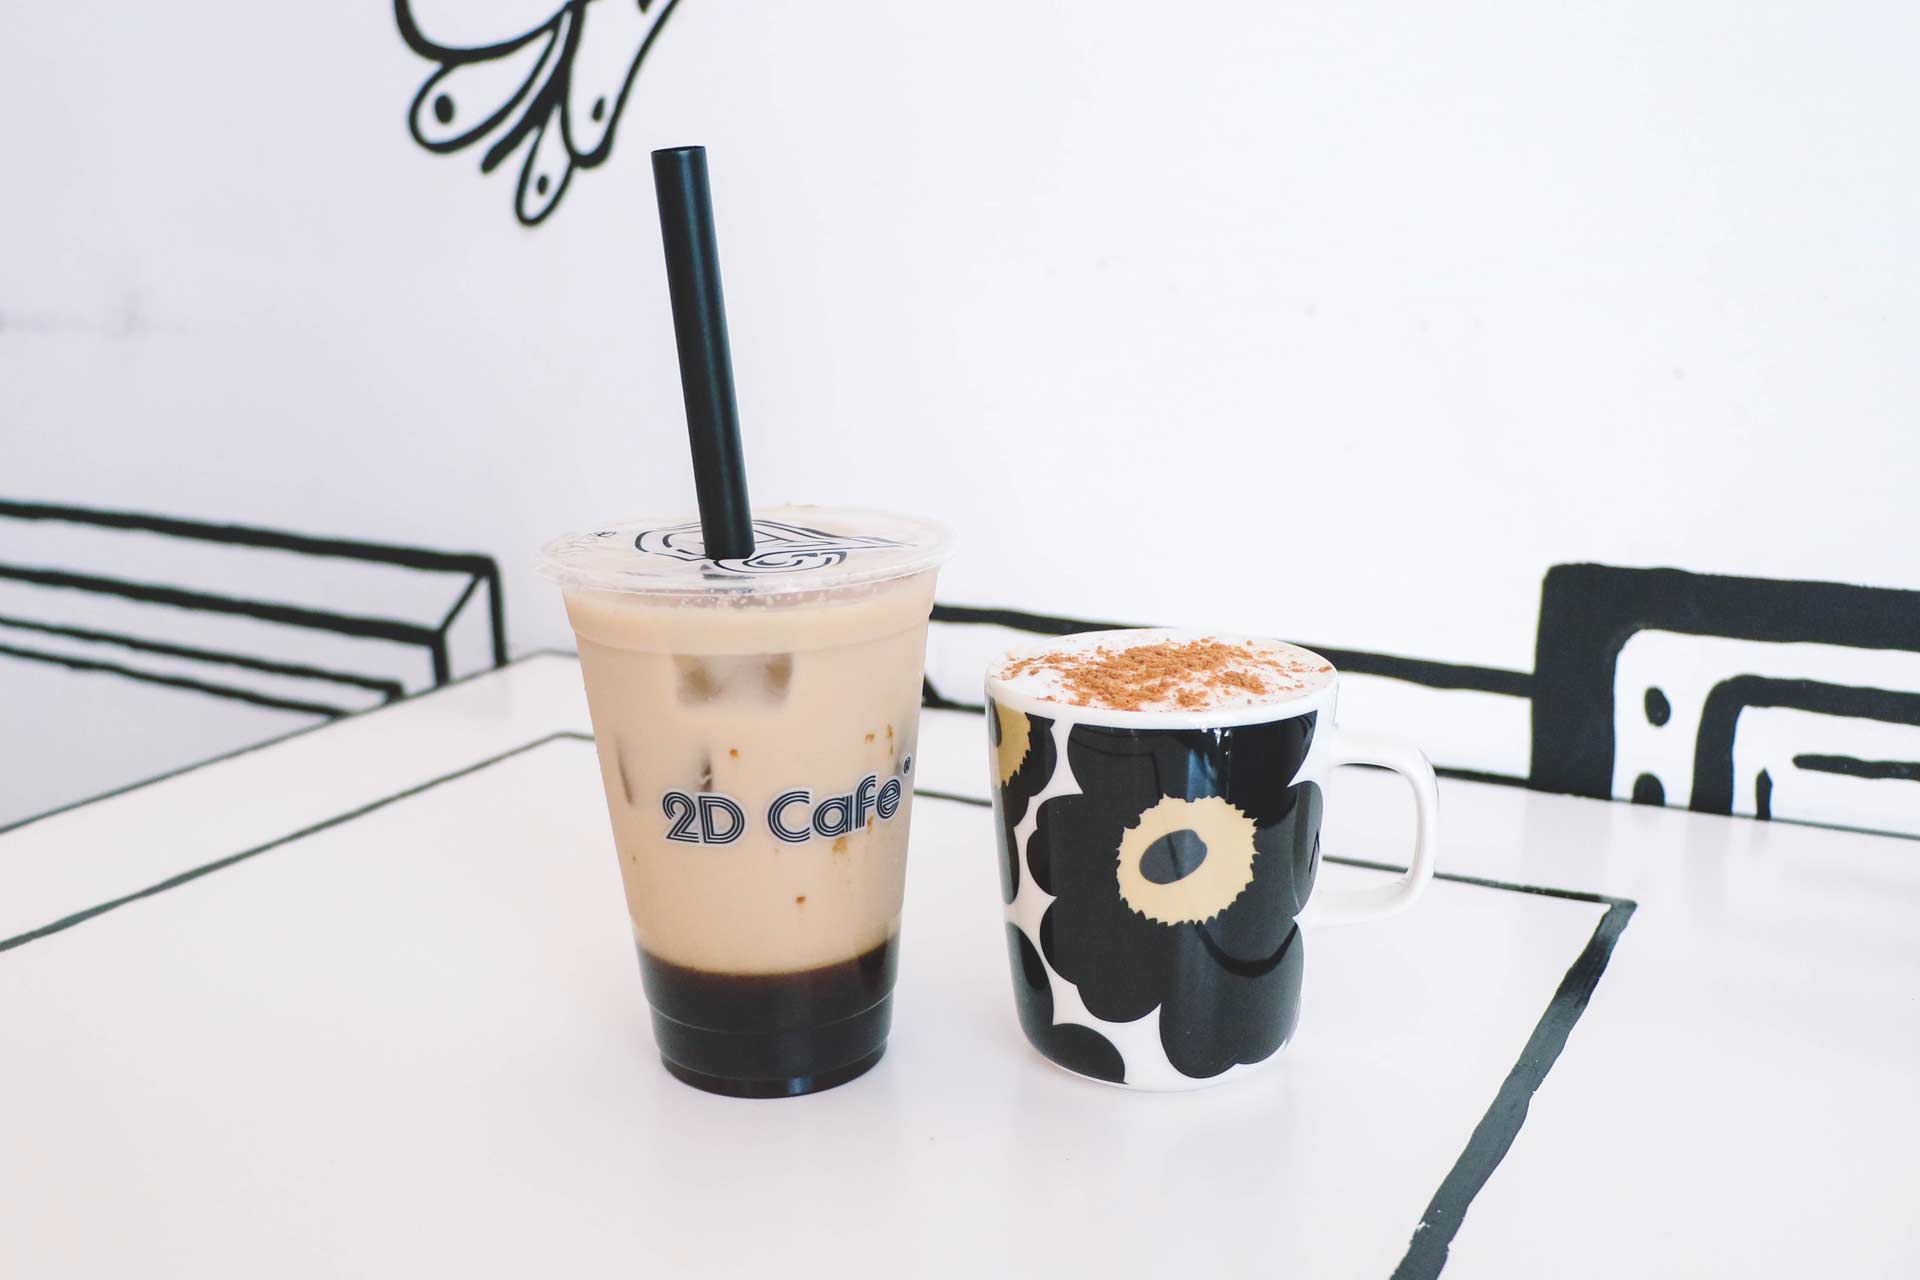 2D Cafe, Tokyo - Bubble Tea and Cappuccino